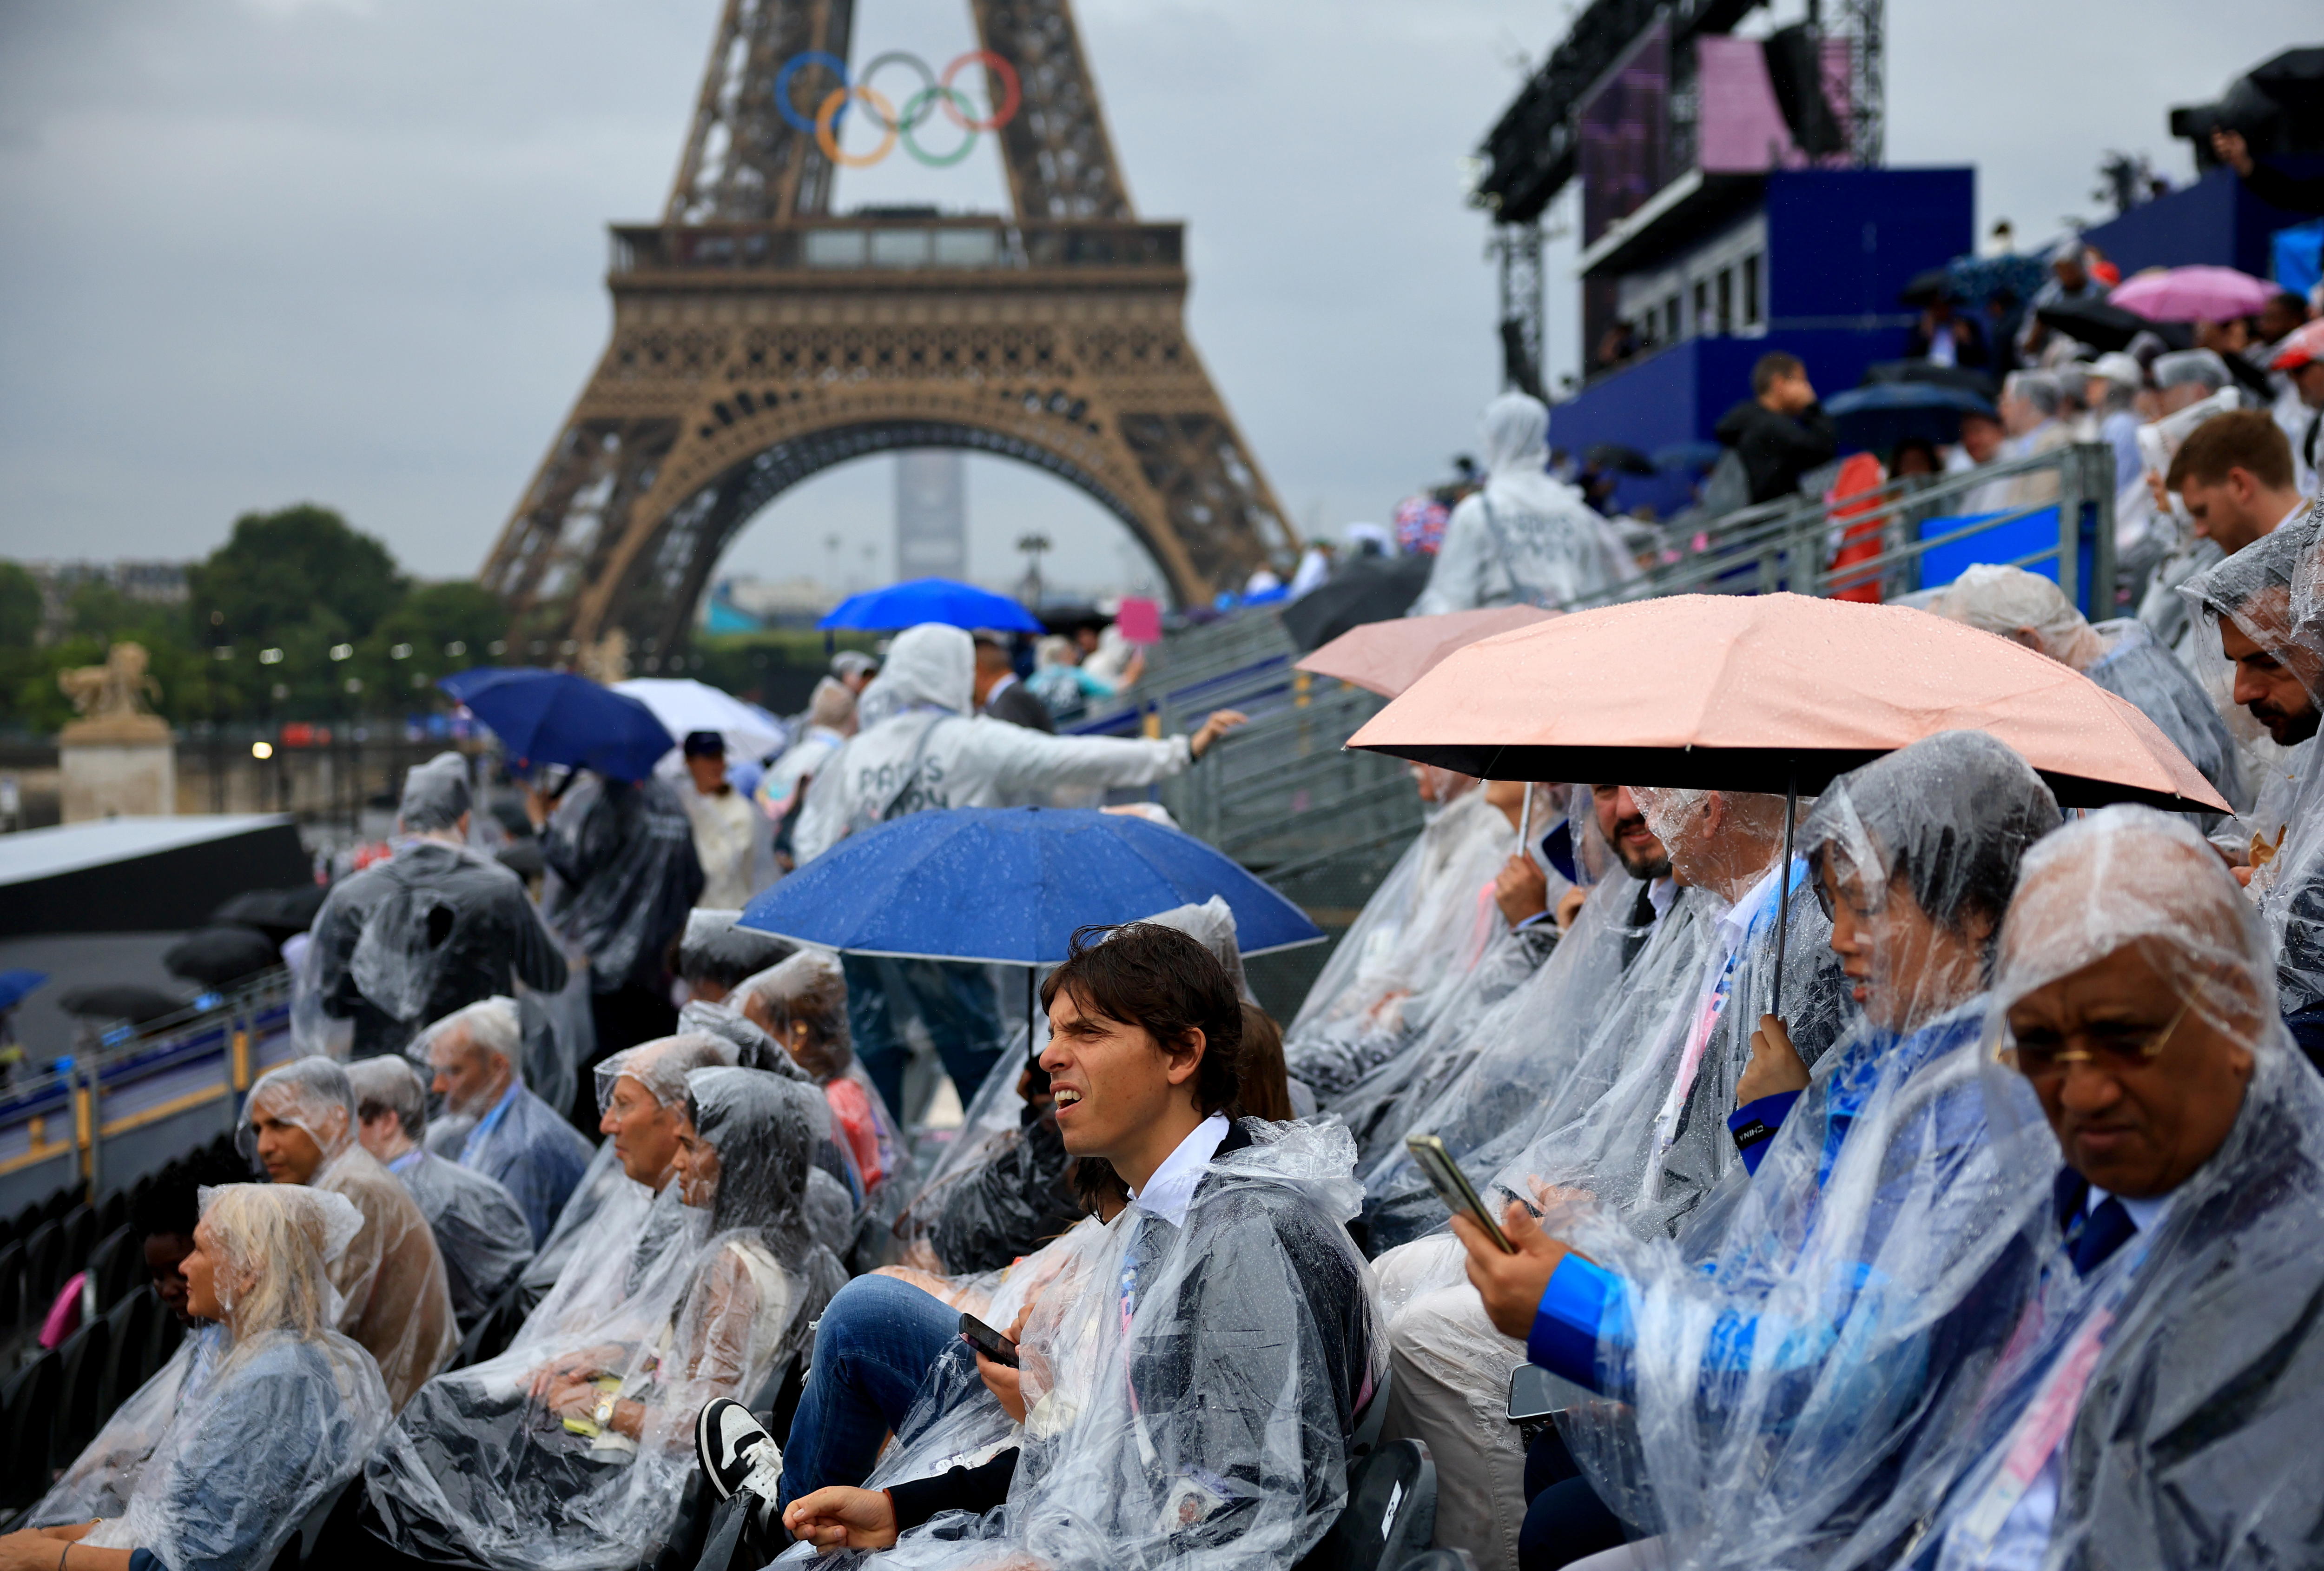 Los espectadores cerca a la torre Eiffel fueron sorprendidos por la lluvia.